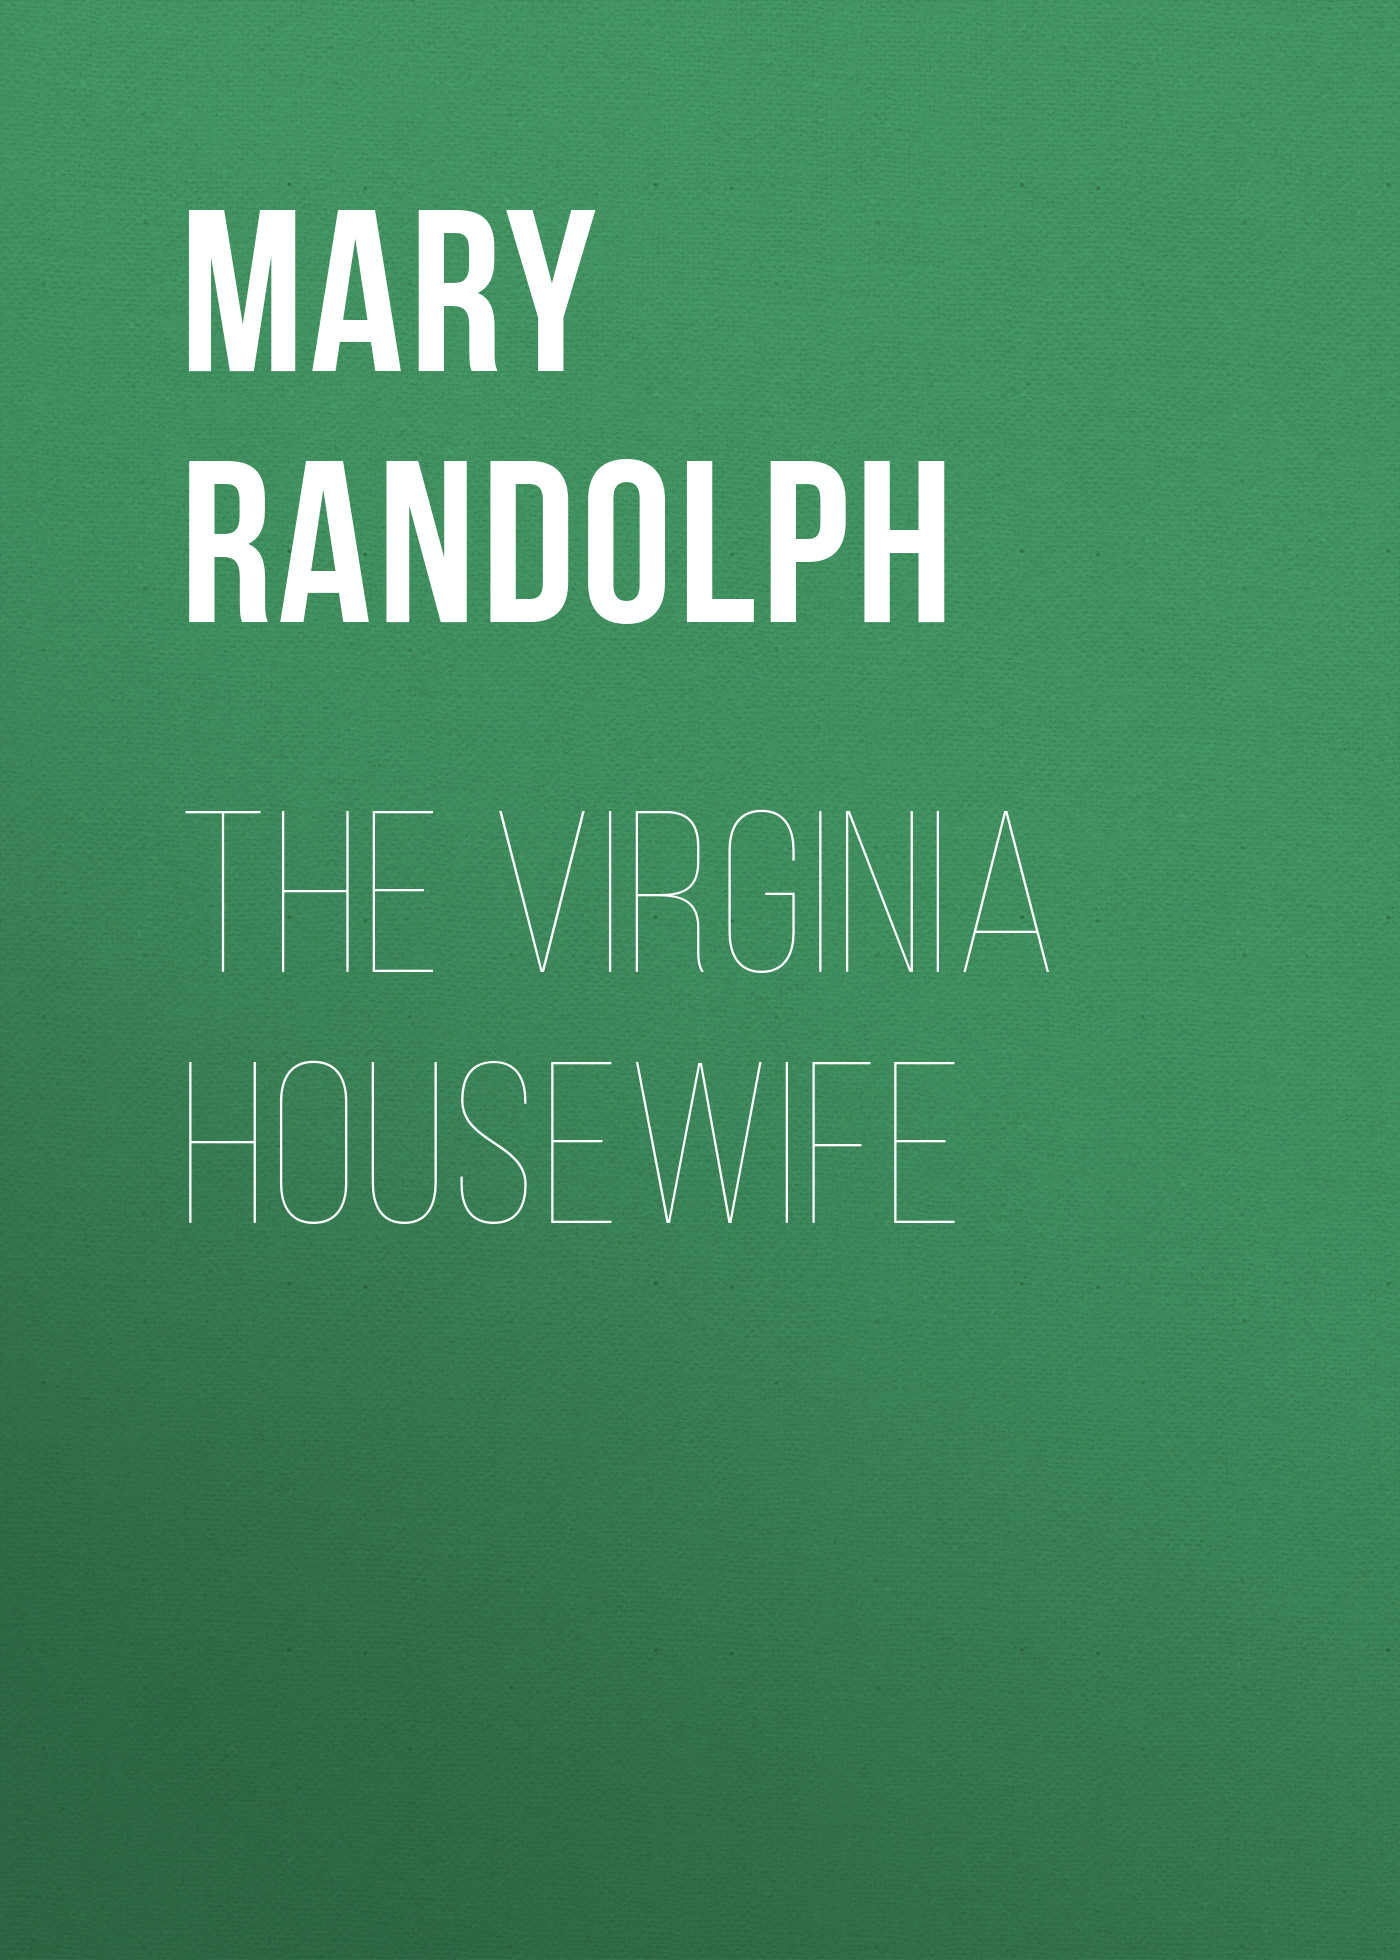 Книга The Virginia Housewife из серии , созданная Mary Randolph, может относится к жанру Кулинария, Зарубежная прикладная и научно-популярная литература. Стоимость электронной книги The Virginia Housewife с идентификатором 36094901 составляет 0 руб.